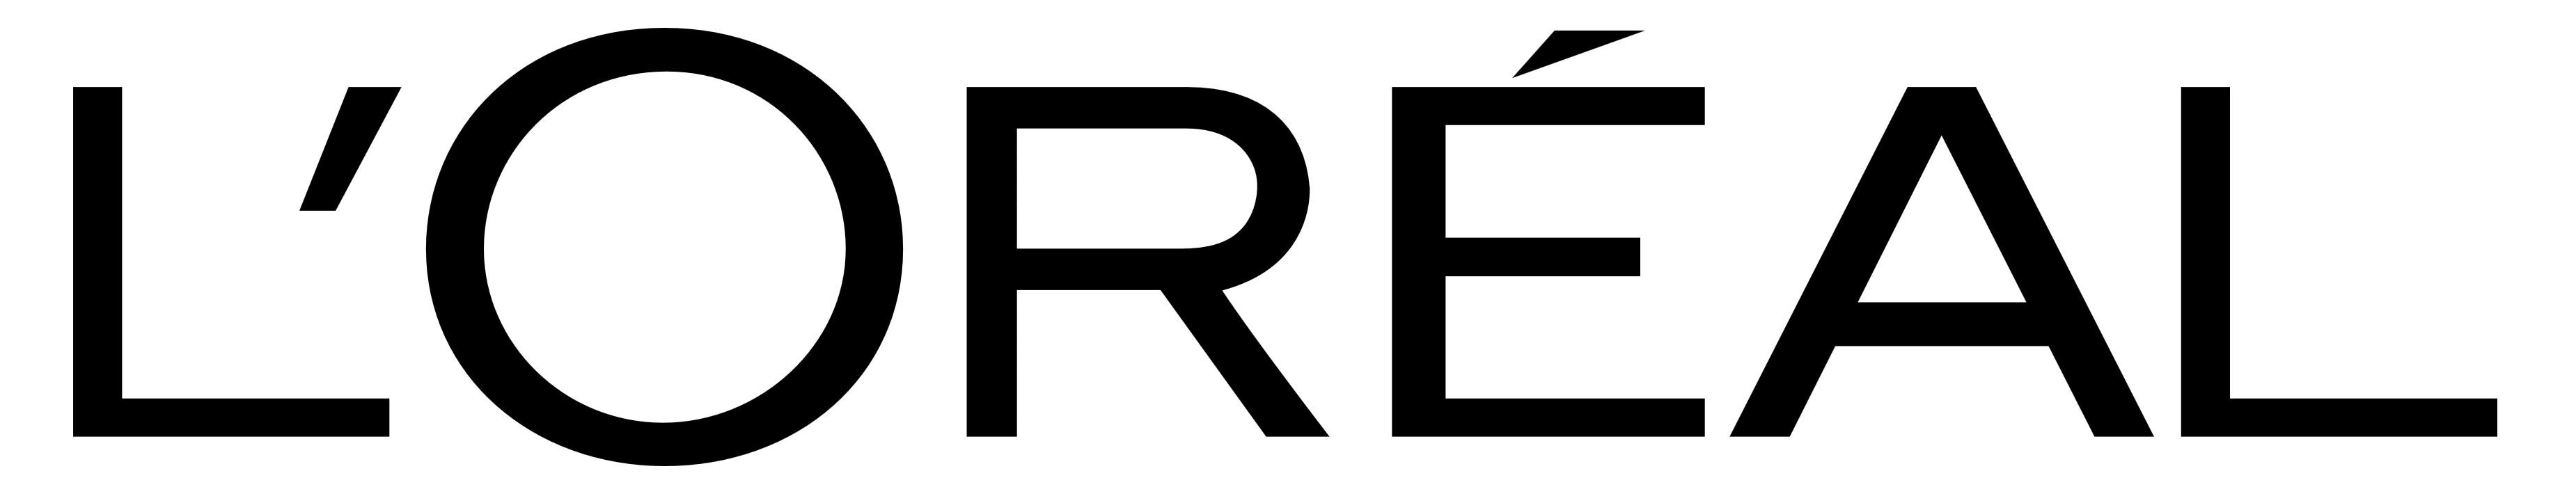 Loreal logo, logotype